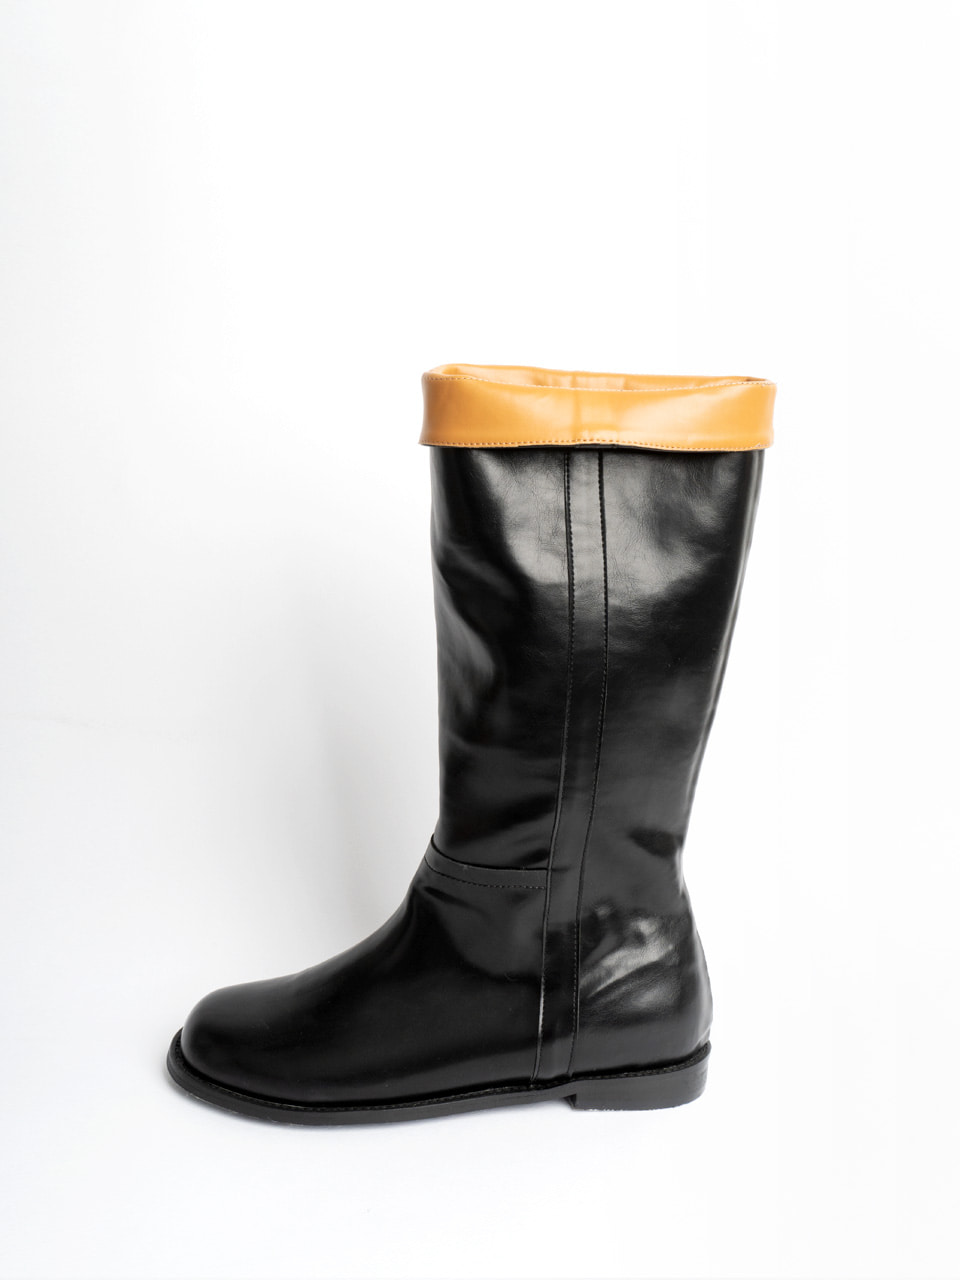 URAGO Basic Round Long Boots